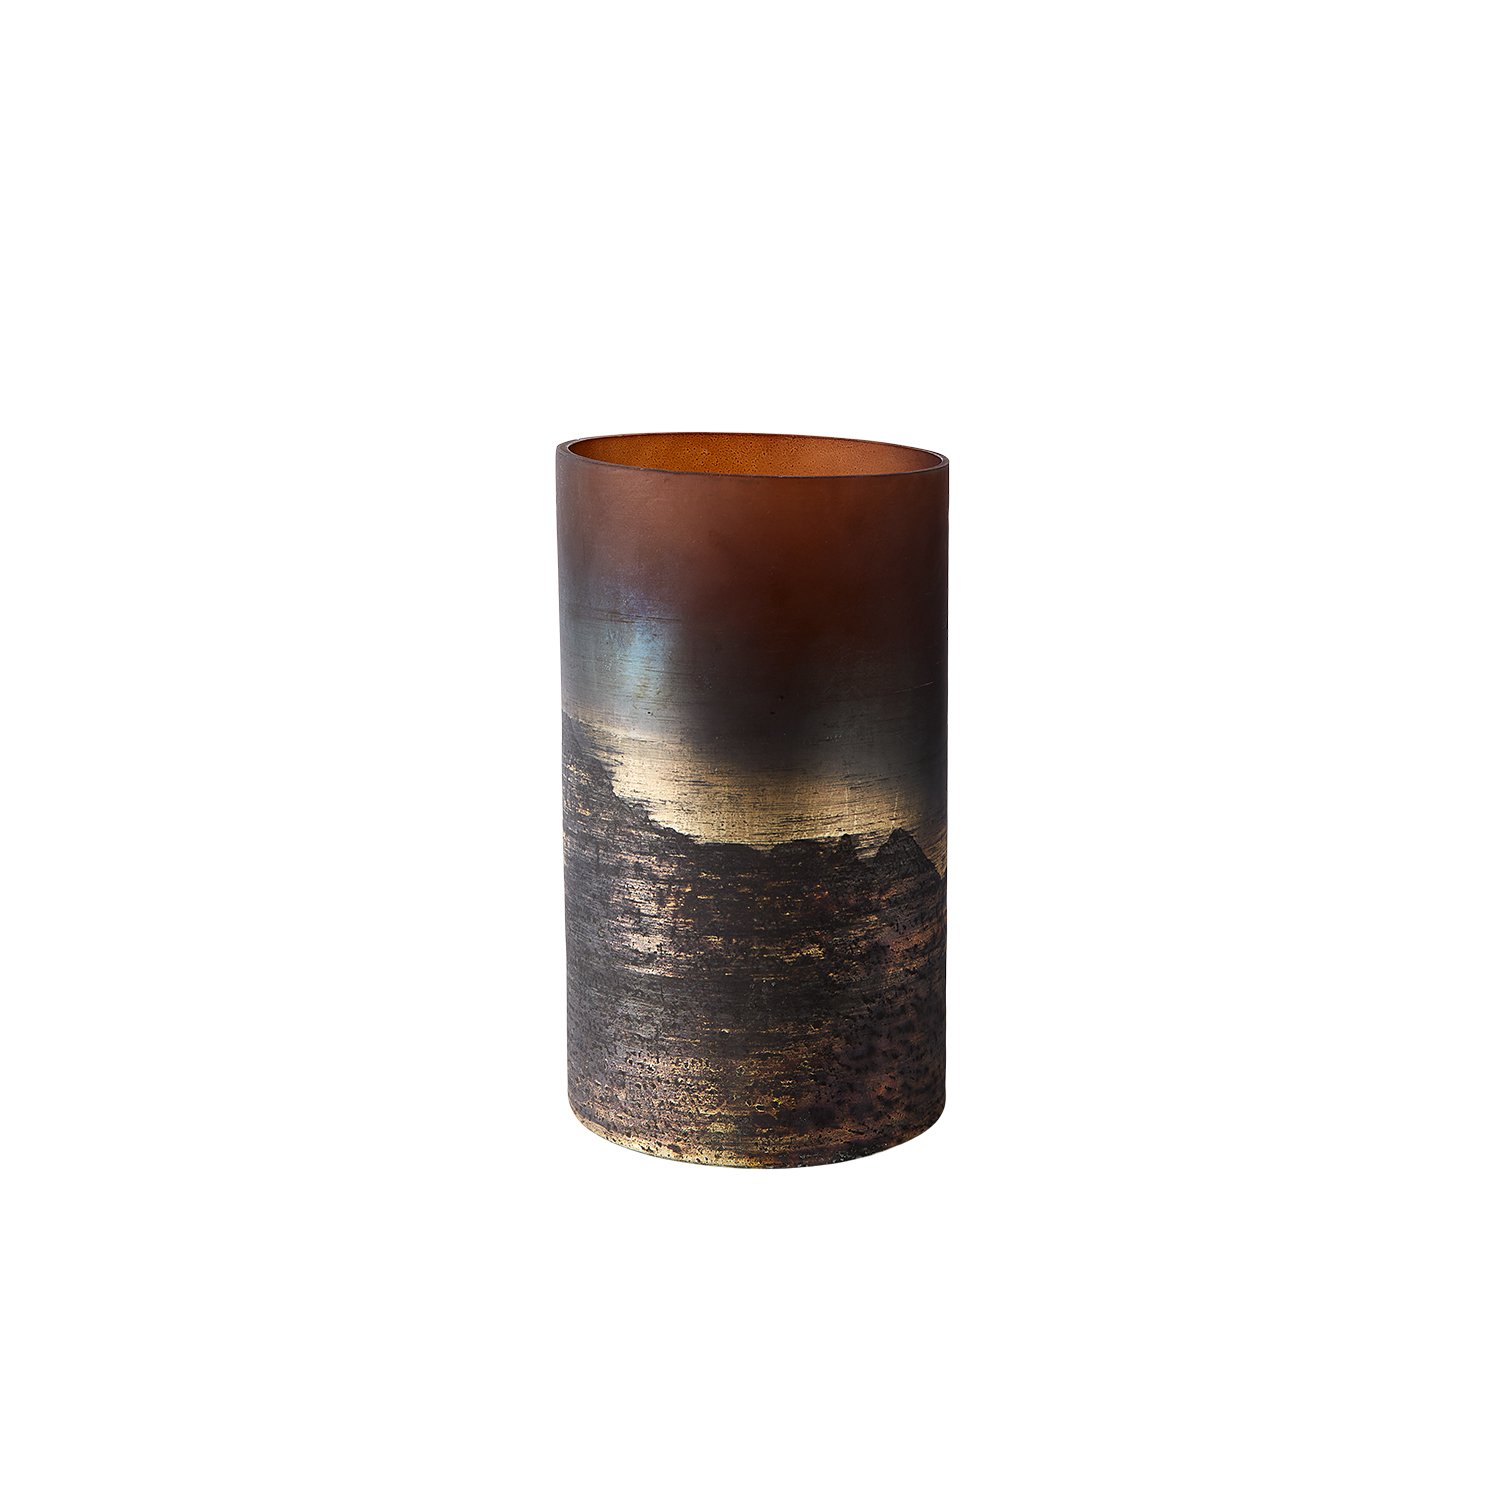 4: Muubs - Vase Lana 25 - Brown/Gold (9190002209)